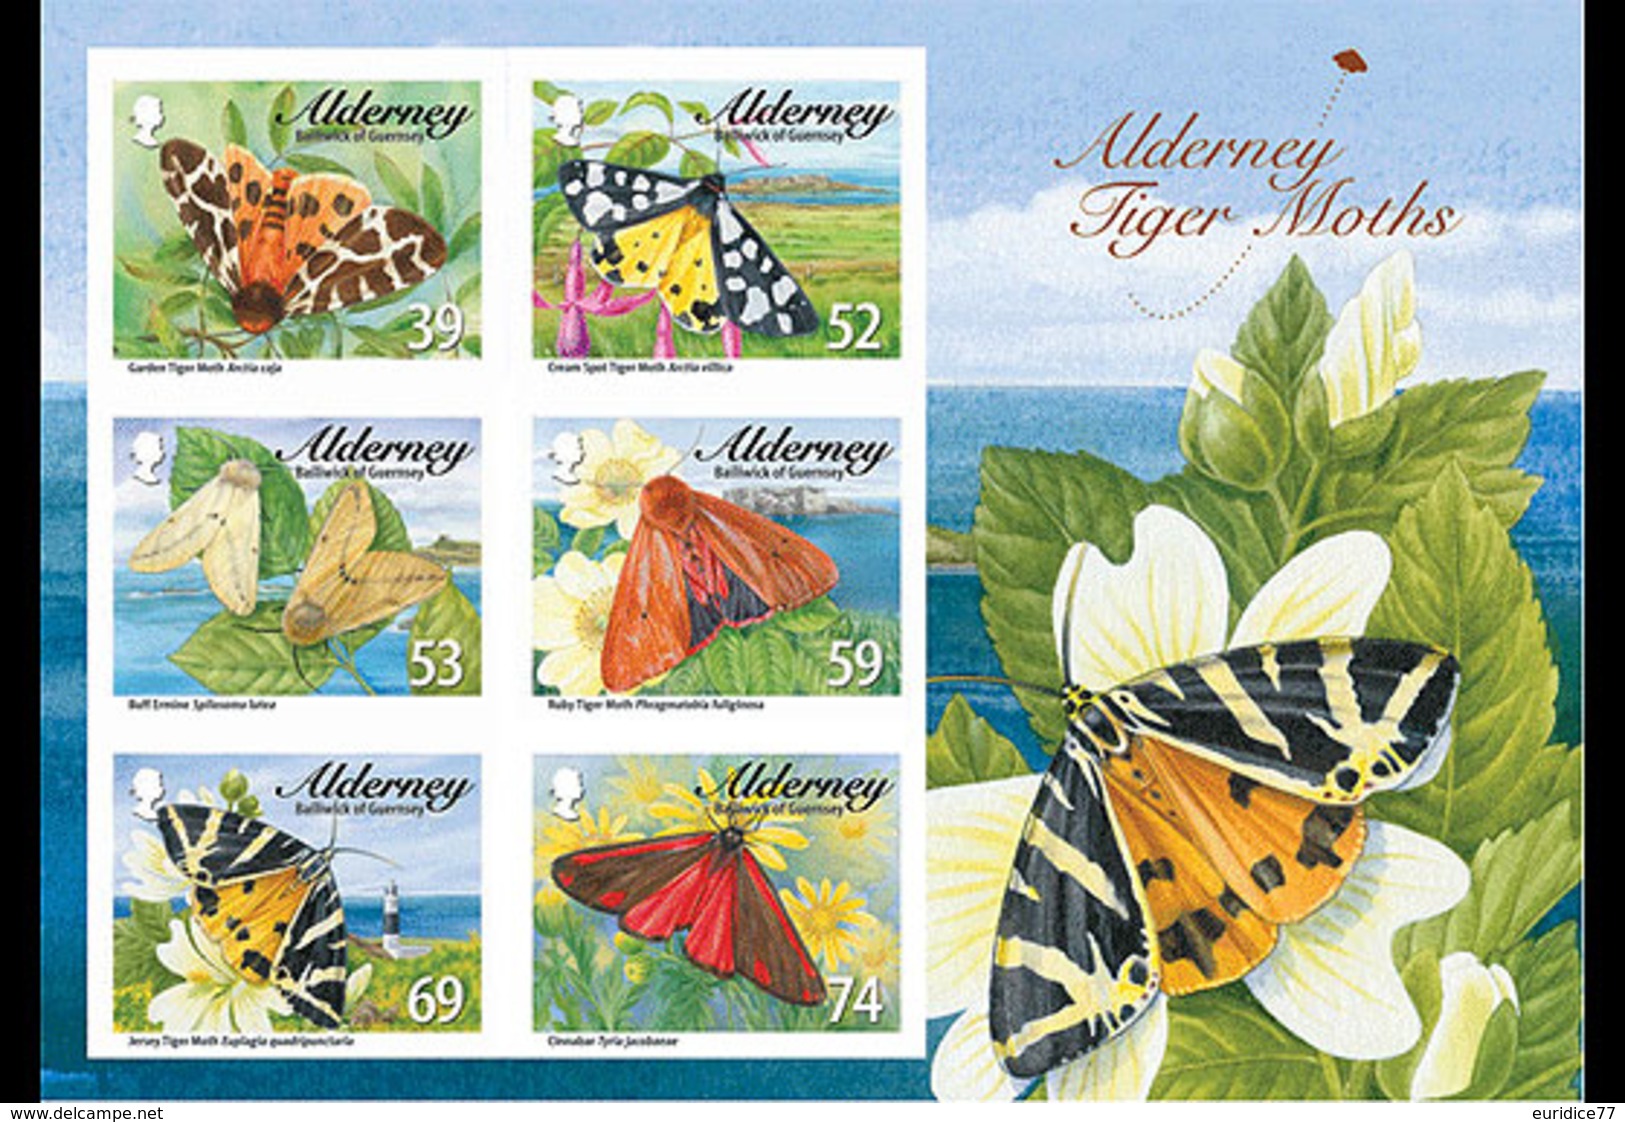 Alderney 2012 -Tiger Moths & Ermines Souvenir Sheet Mnh - Alderney